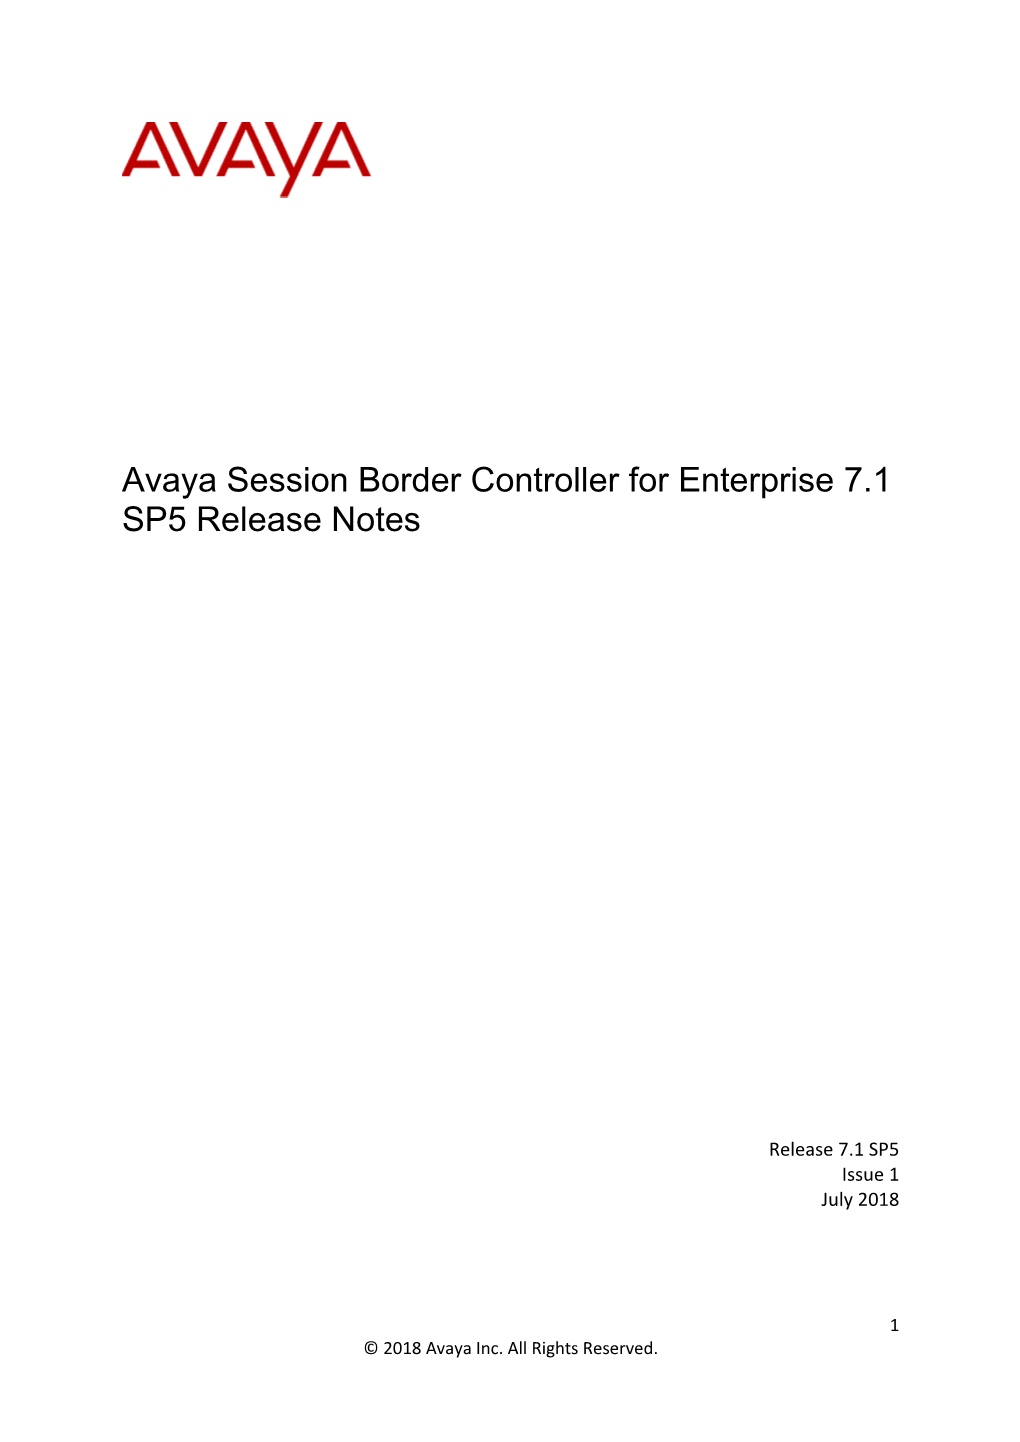 Avaya Session Border Controller for Enterprise 7.1 SP5 Release Notes